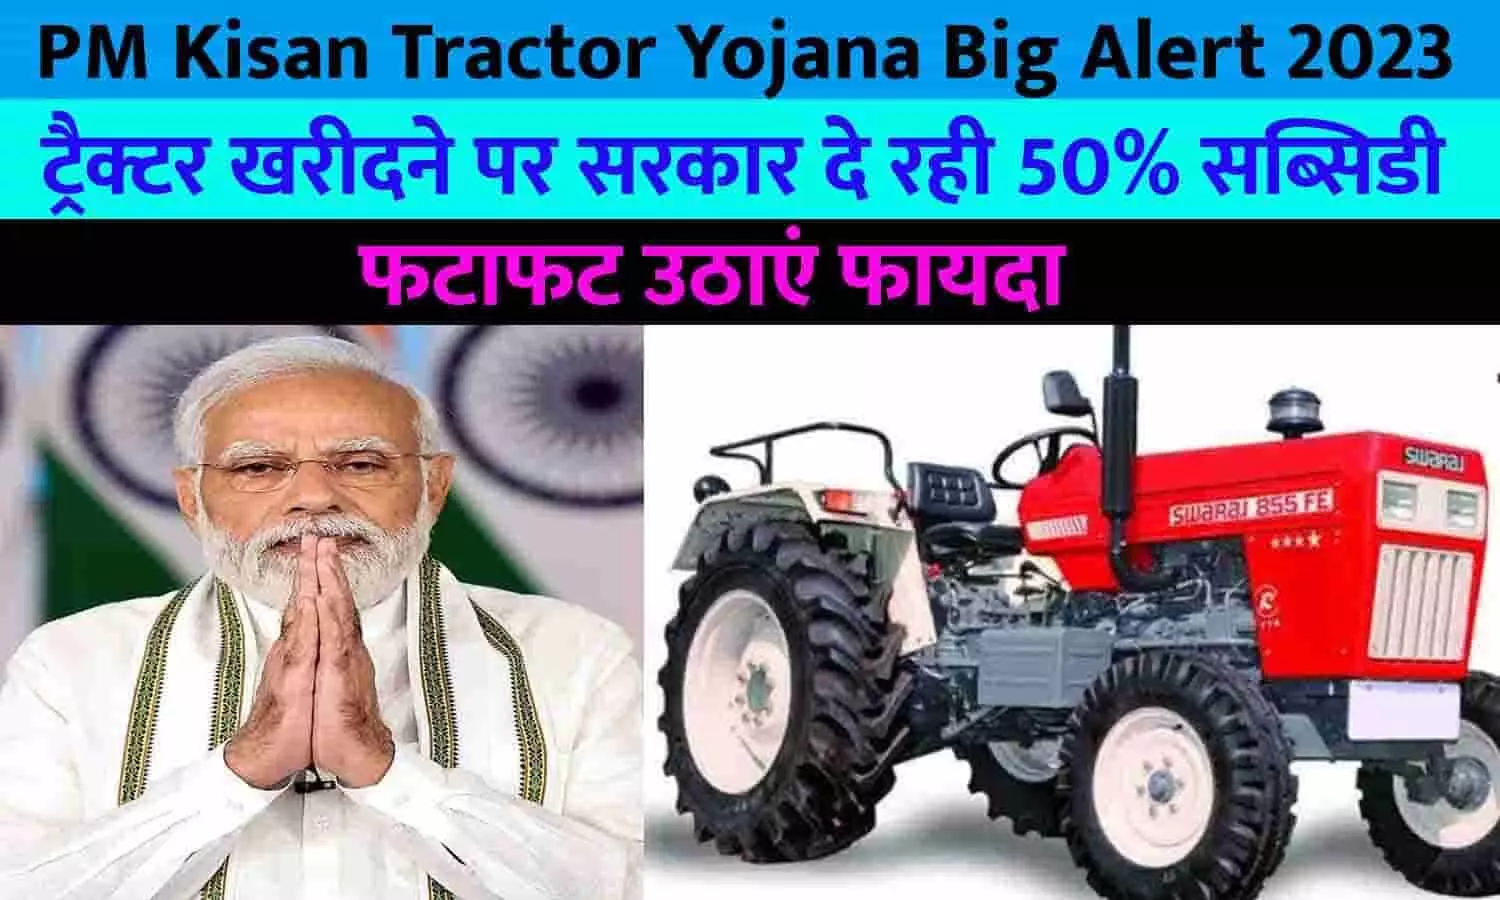 PM Kisan Tractor Yojana Big Alert 2023: खुशखबरी! ट्रैक्टर खरीदने पर सरकार दे रही 50% सब्सिडी, फटाफट उठाएं फायदा